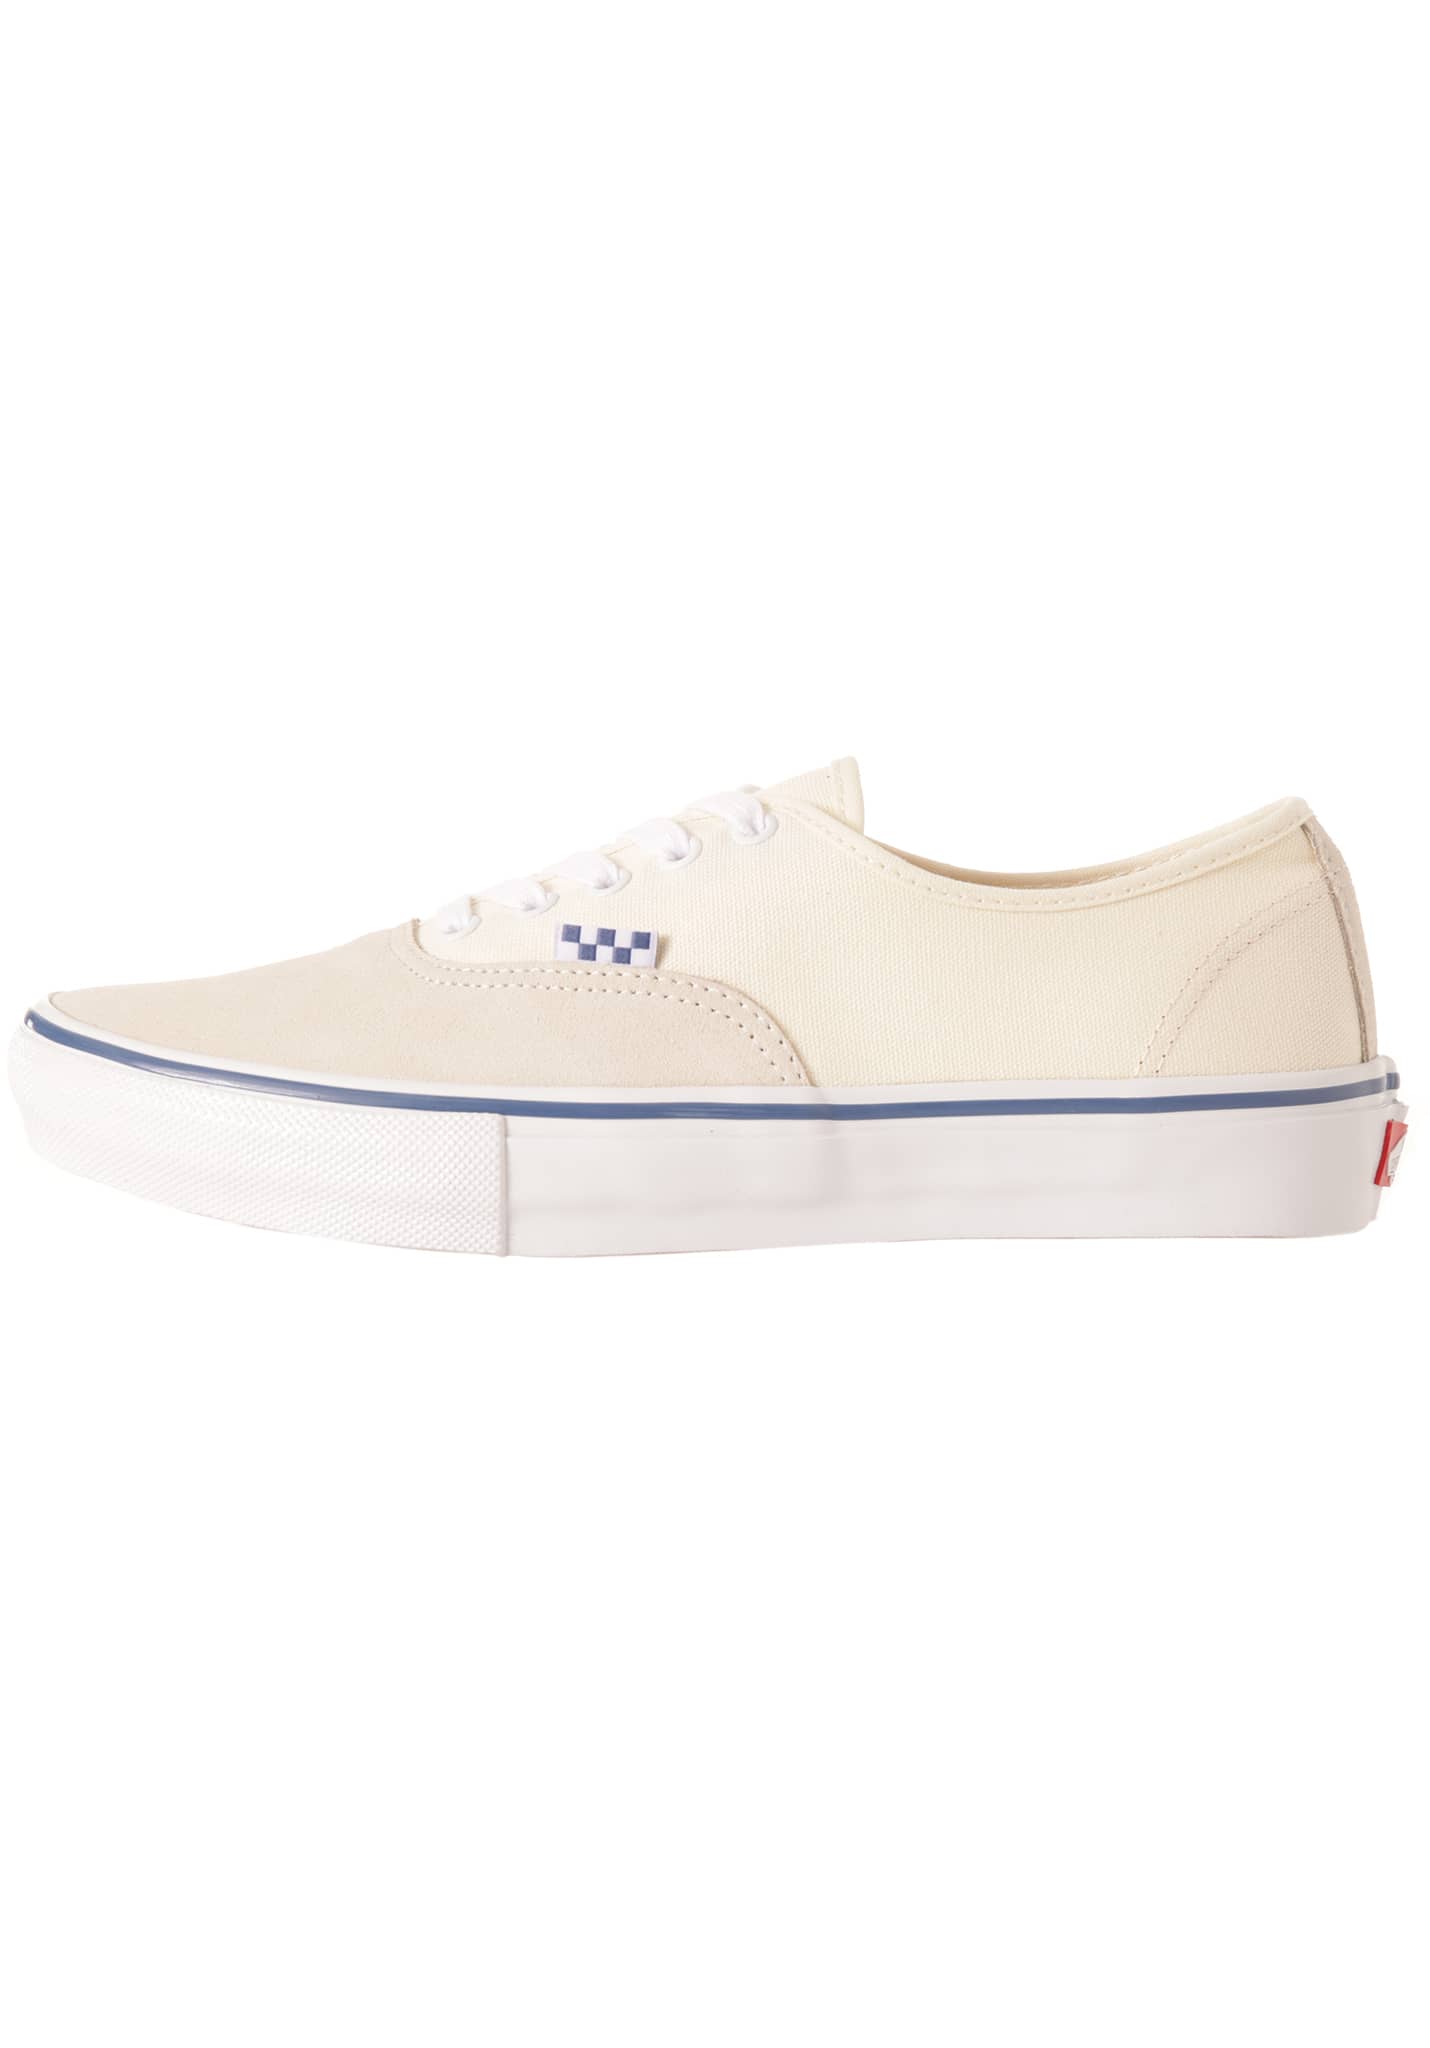 Vans Skate Authentic Sneaker off white 44